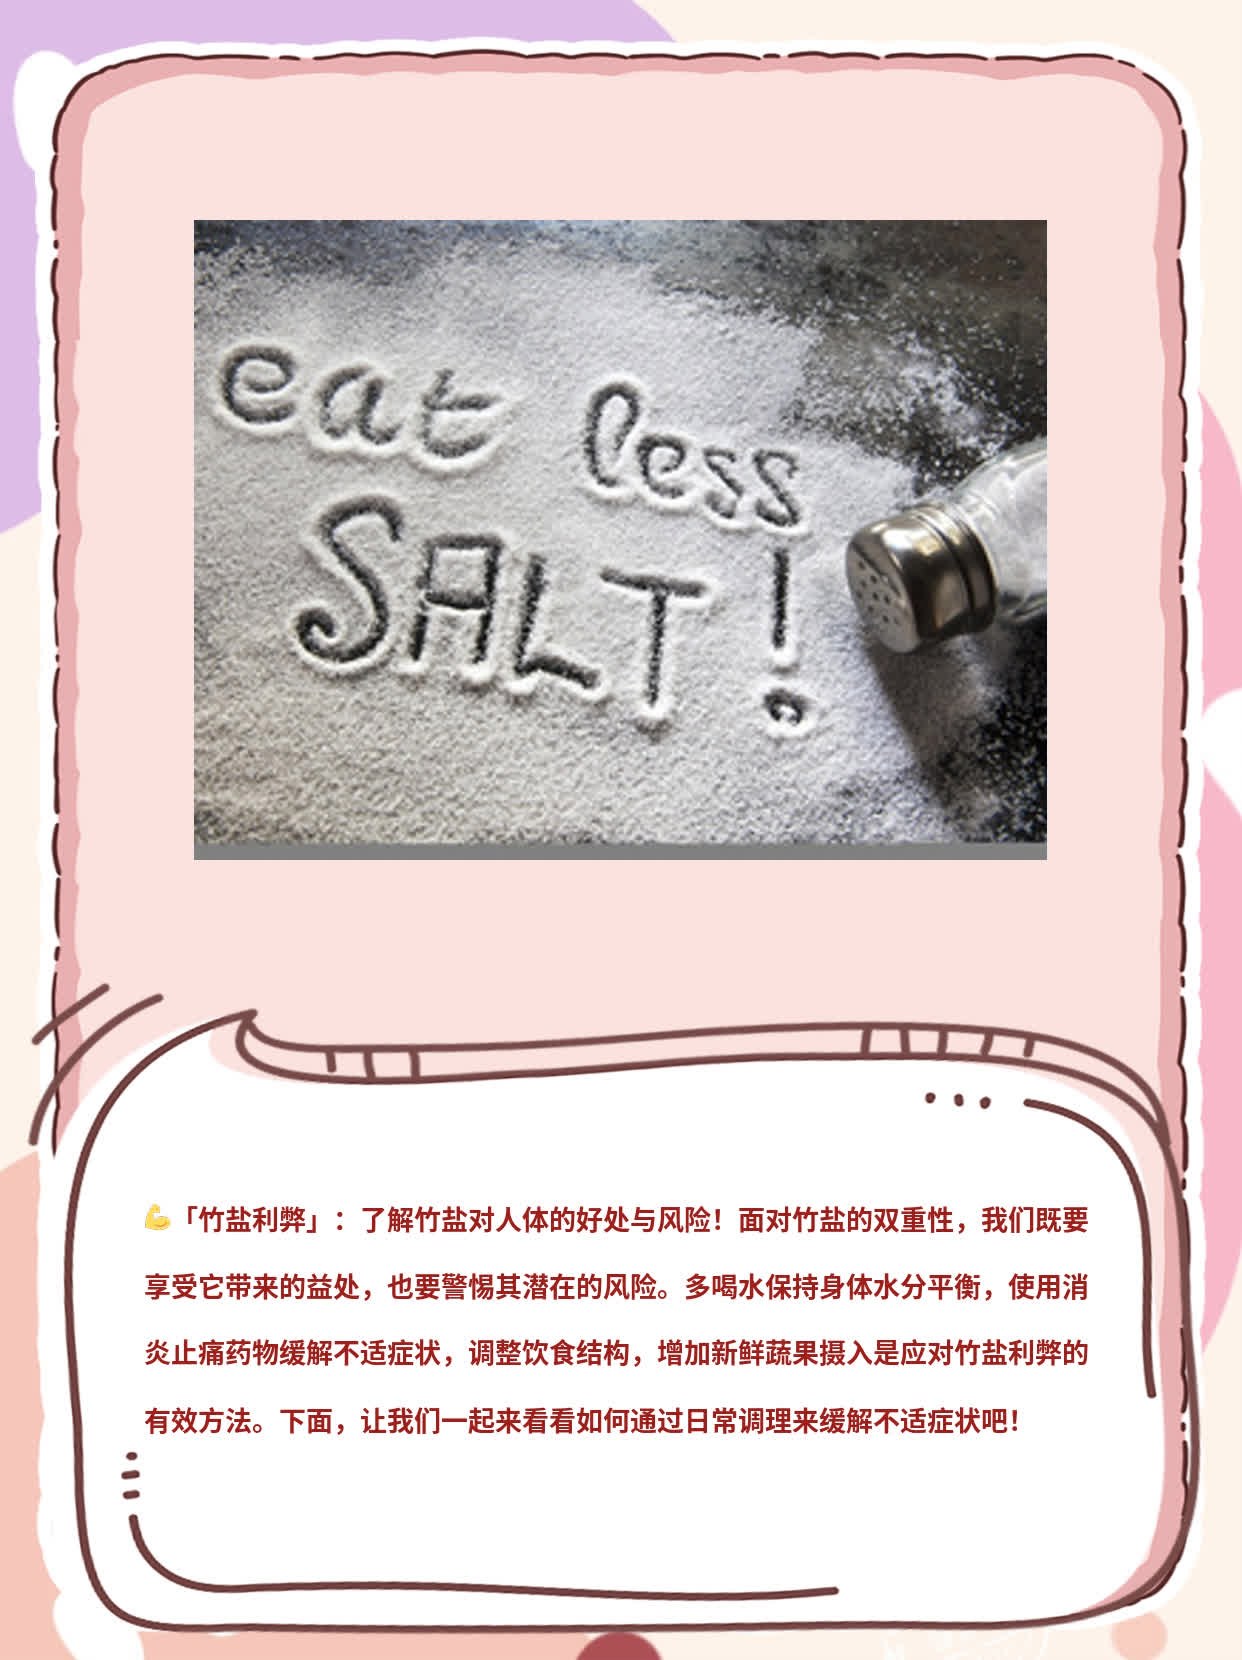 「竹盐利弊」：了解竹盐对人体的好处与风险！